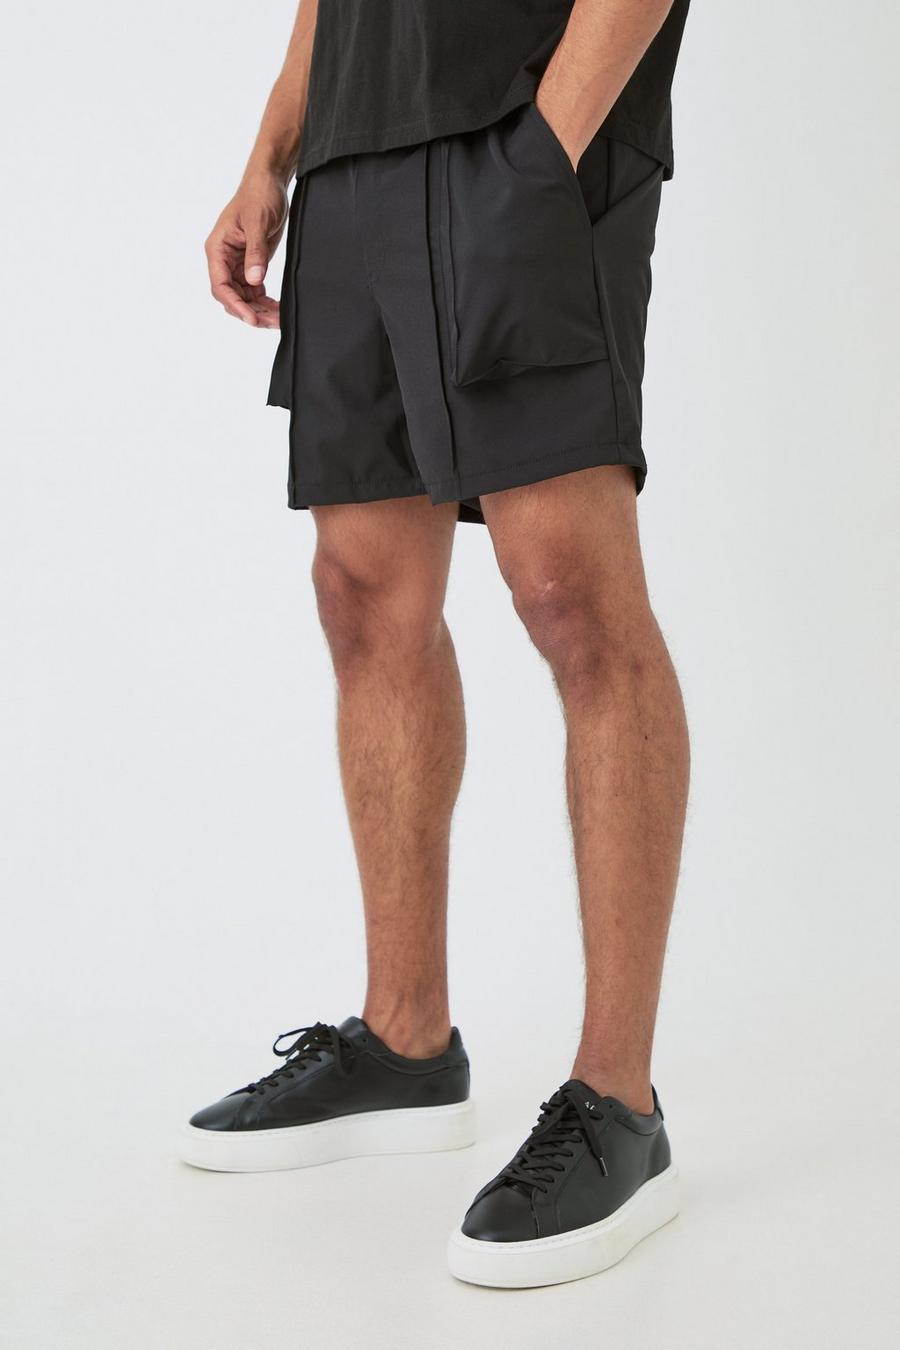 Black Nette Geplooide Stretch Tech Shorts